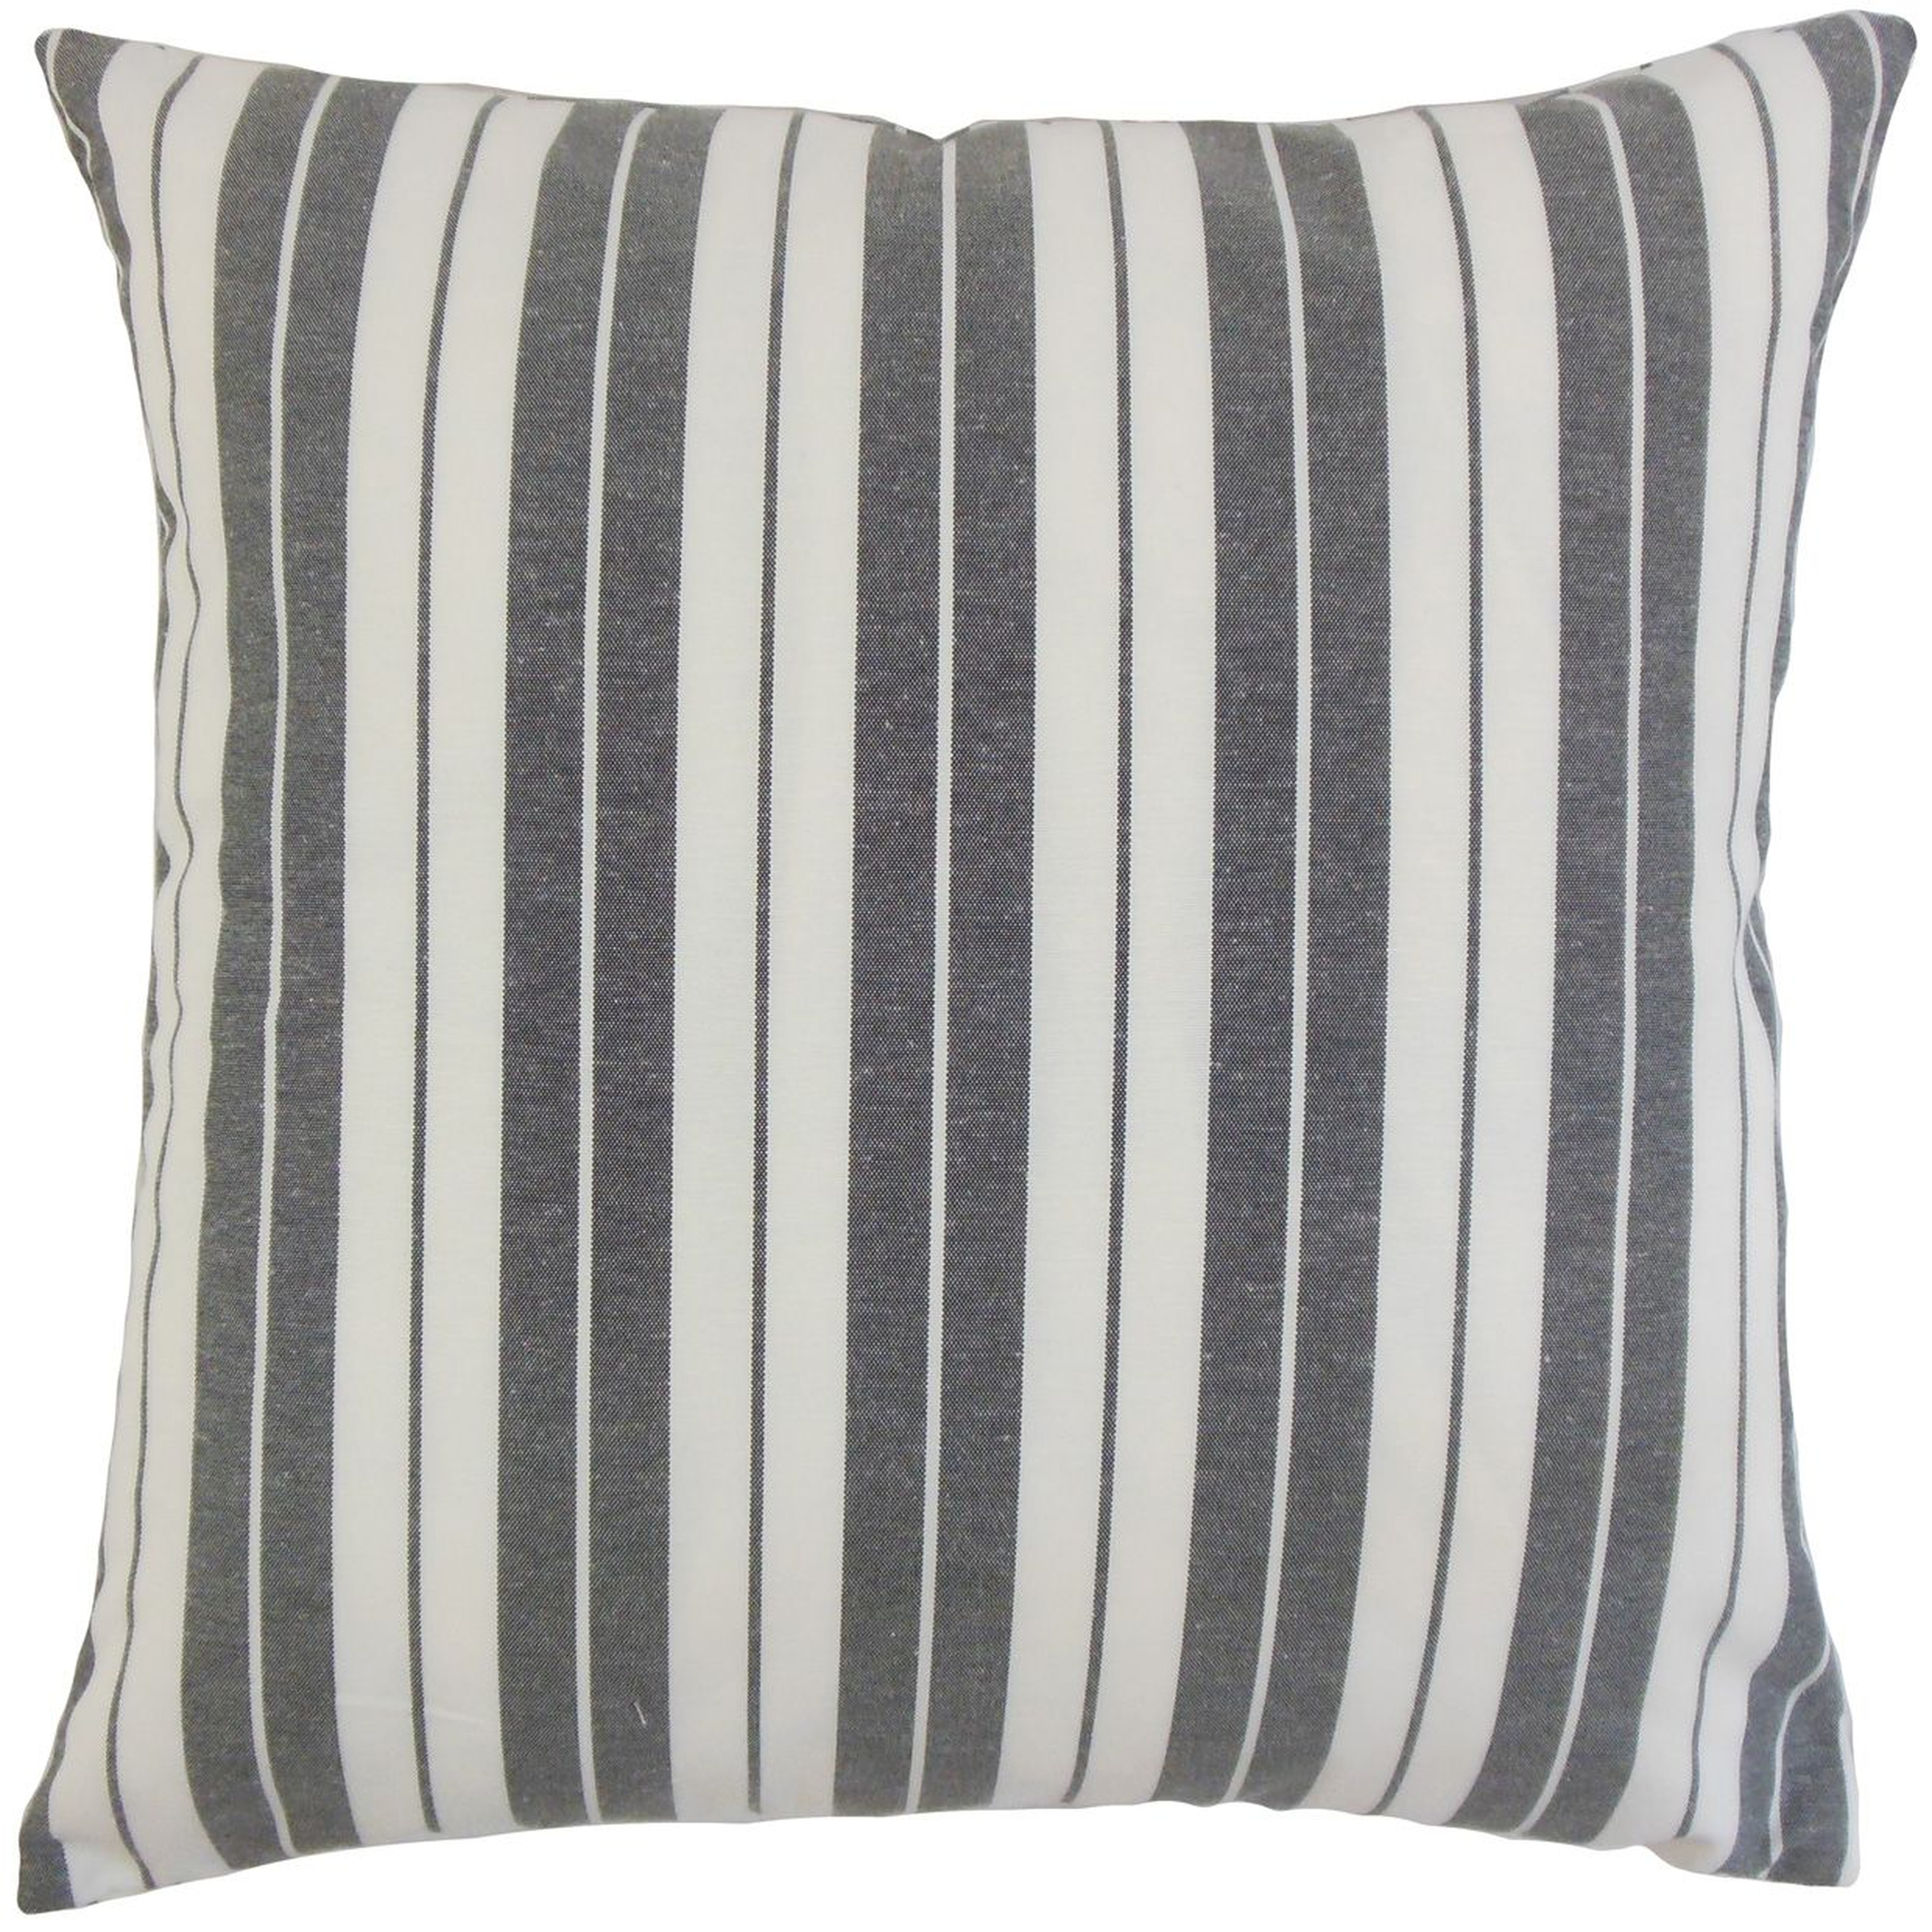 Henley Stripe Pillow, Black, 22" x 22" - Havenly Essentials